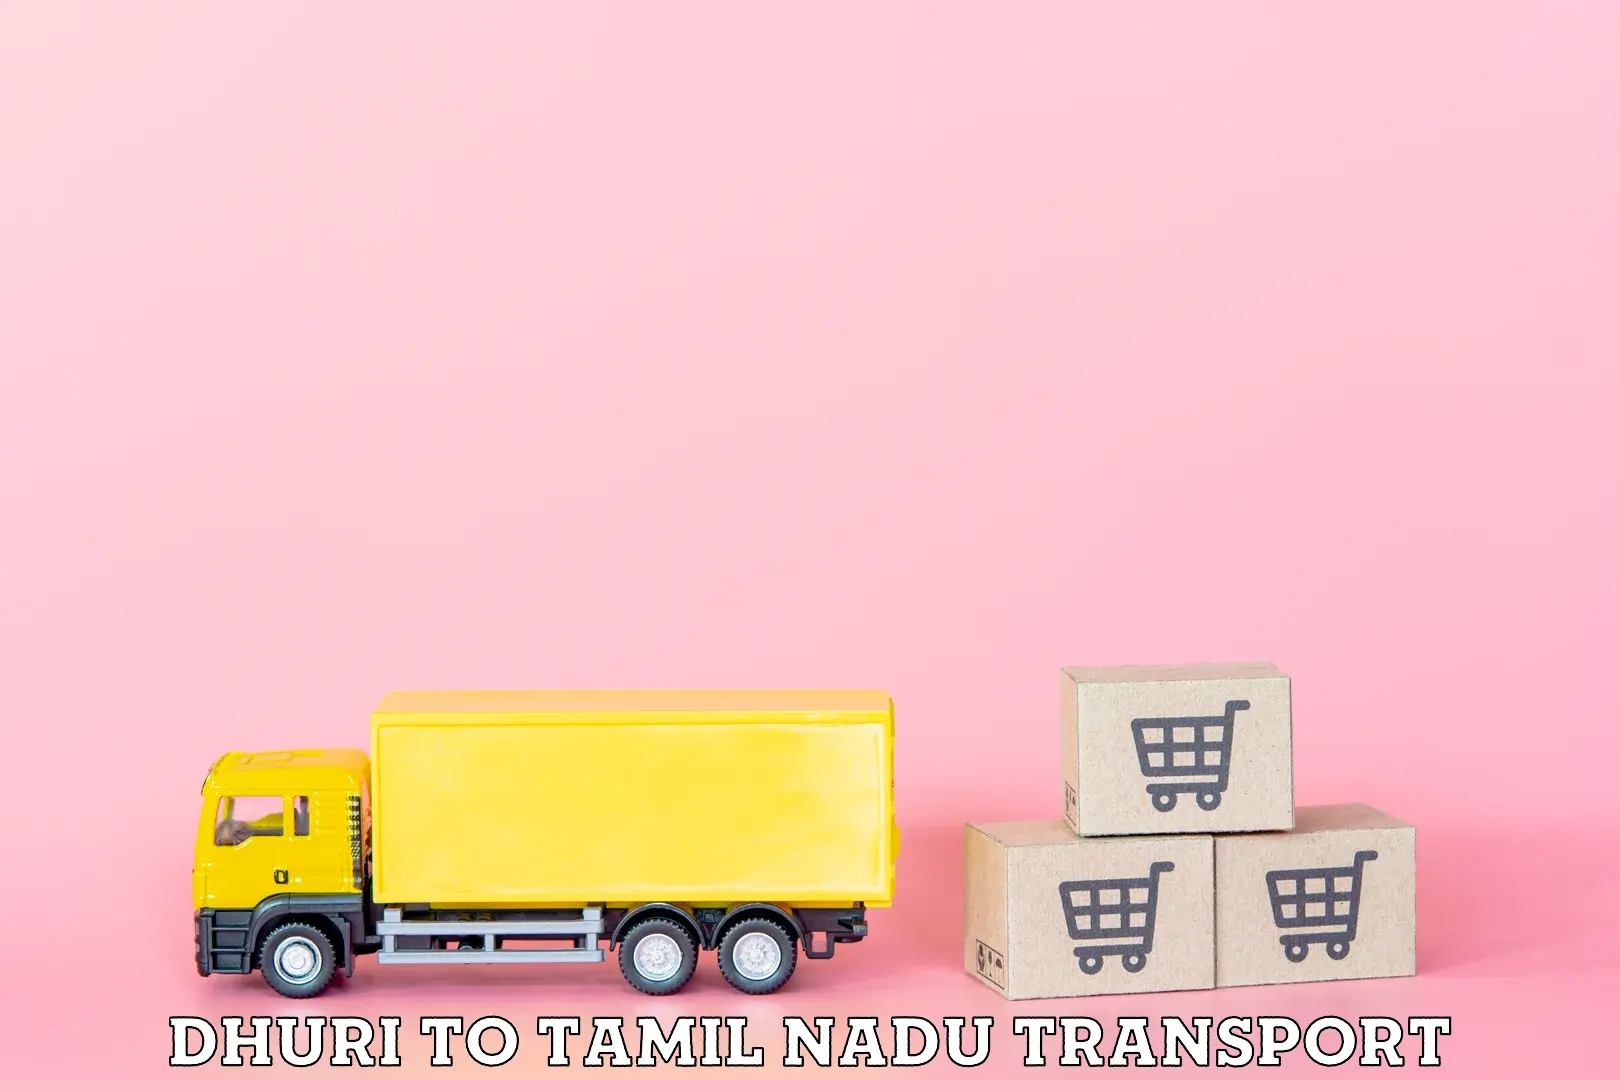 Furniture transport service Dhuri to Thiruthuraipoondi